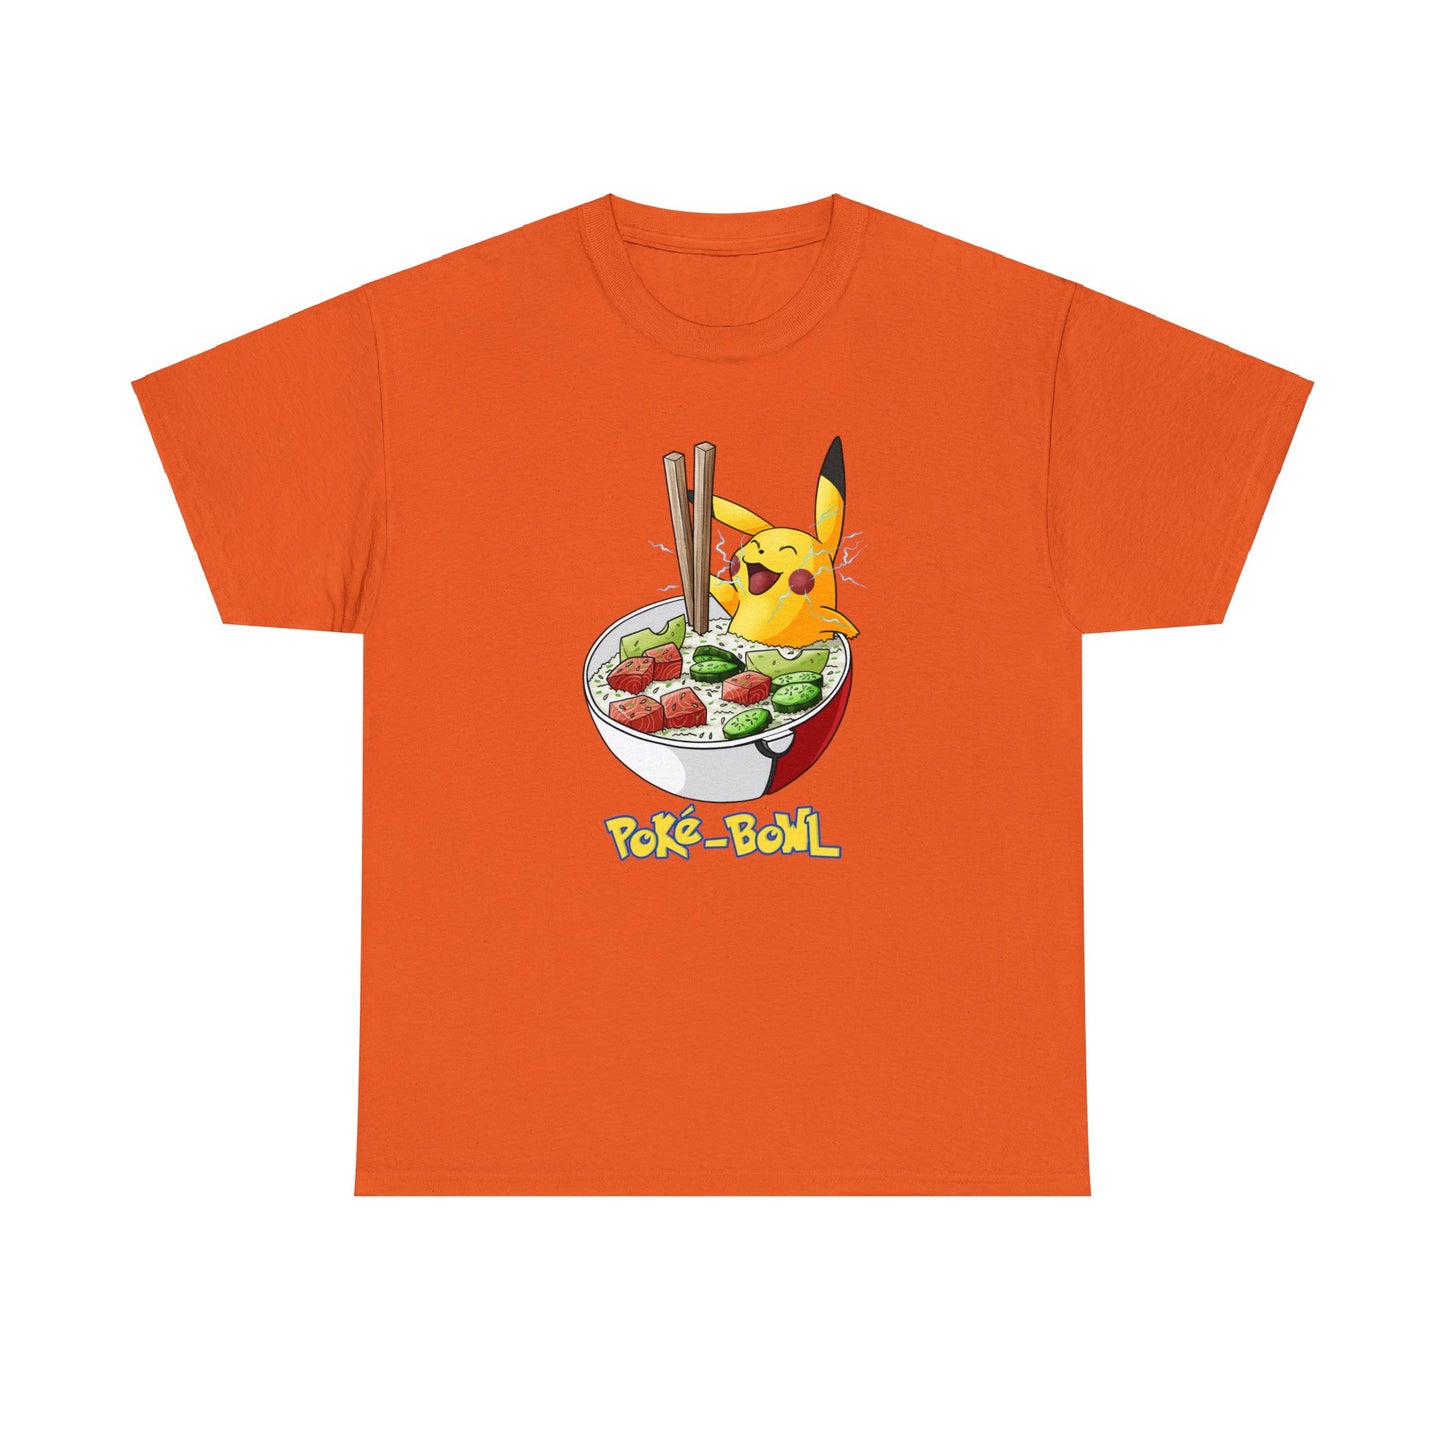 Custom Parody T-shirt, Poke'-Bowl design